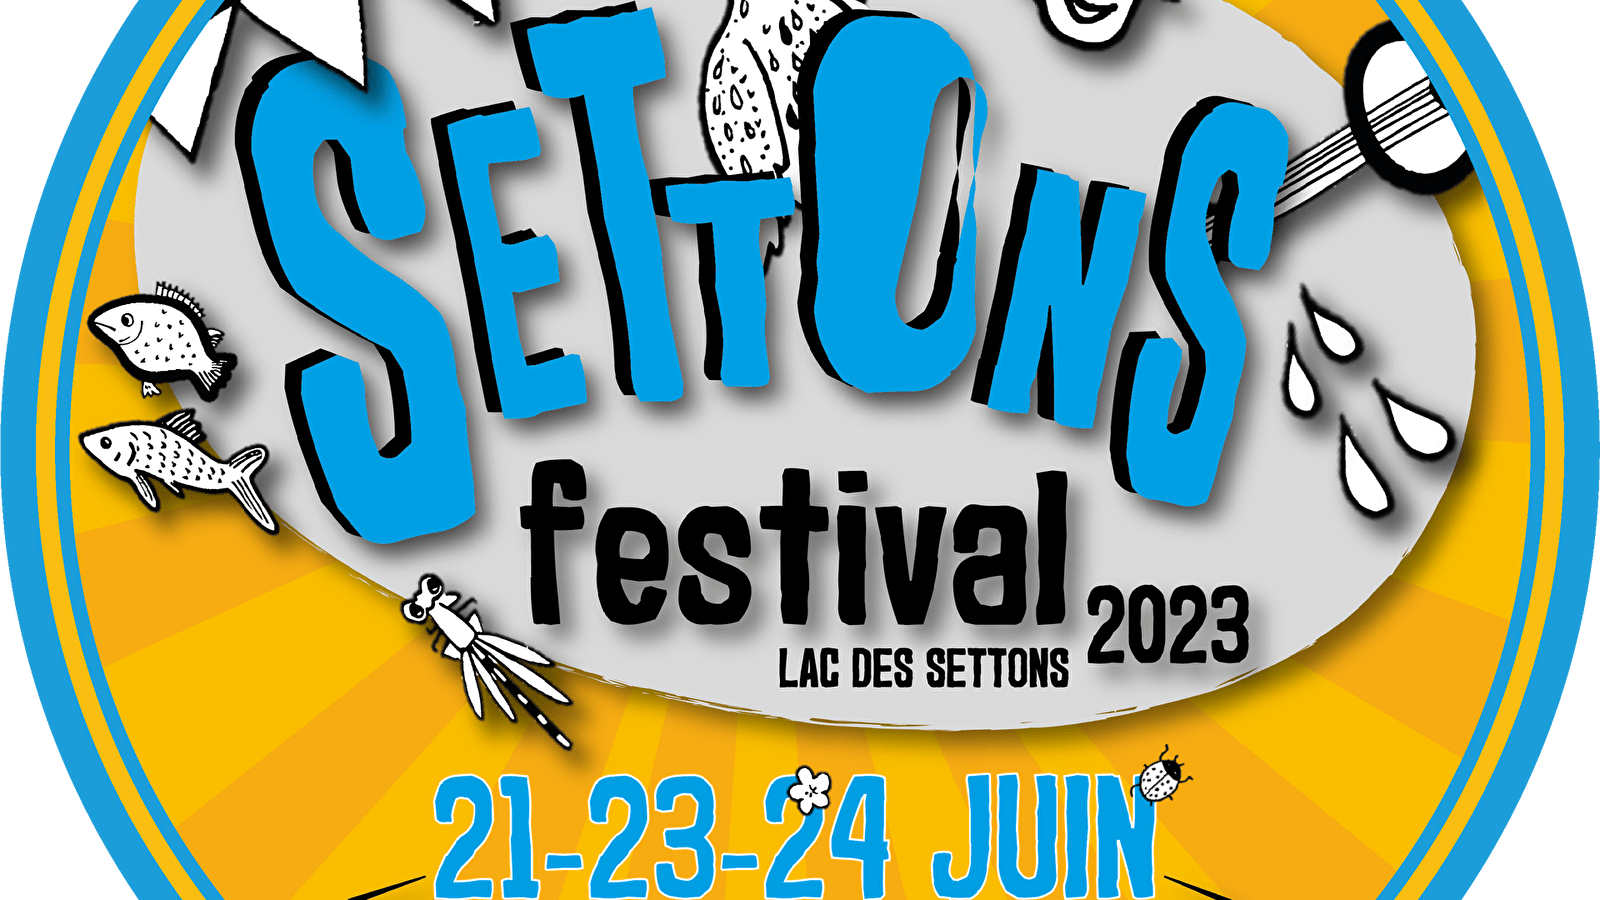 Settons Festival - Apero Plage Settons